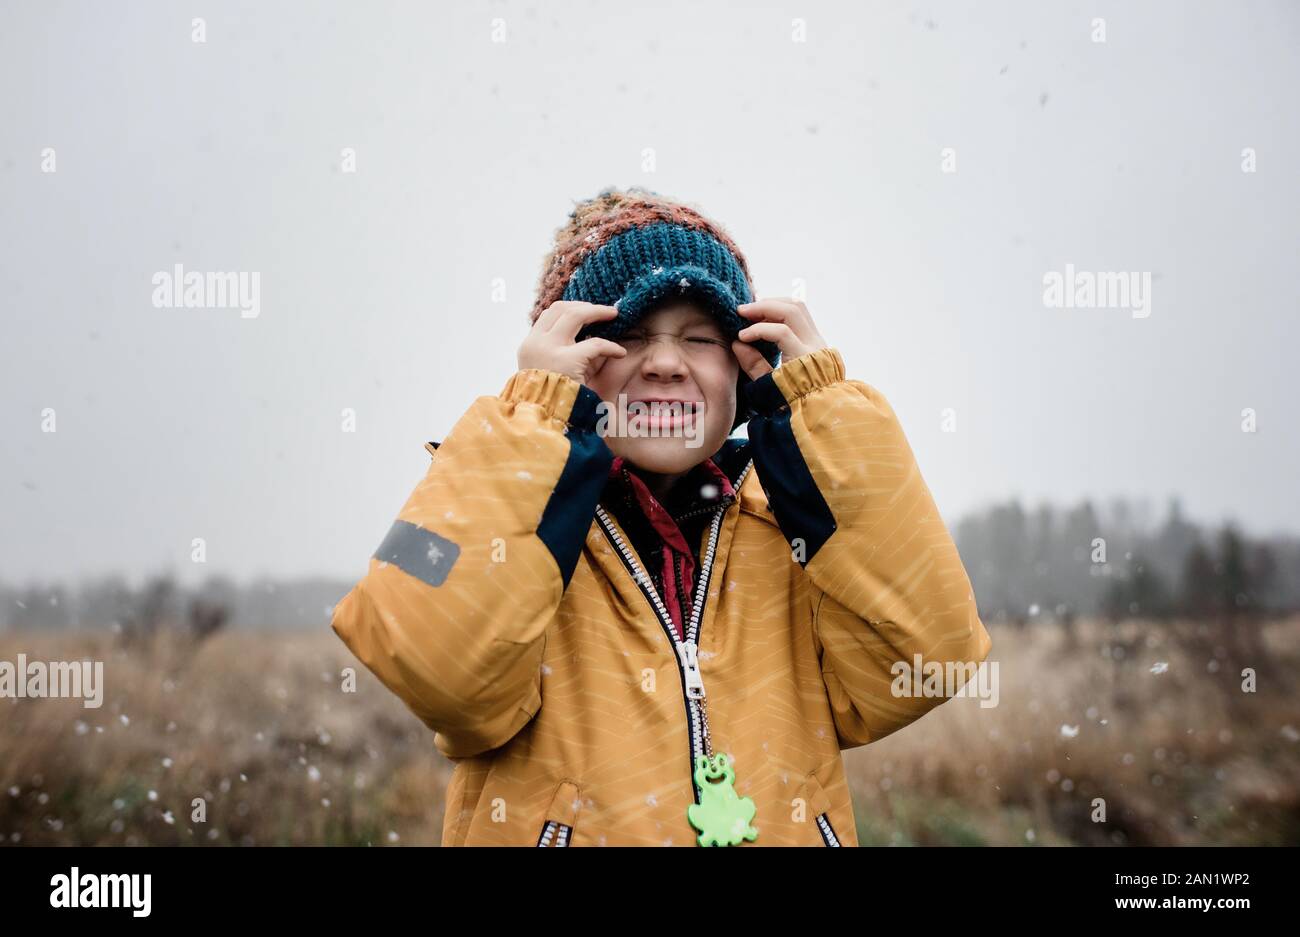 Junge, der sein Gesicht mit dem Hut bedeckt, während er im Schnee spielt Stockfoto